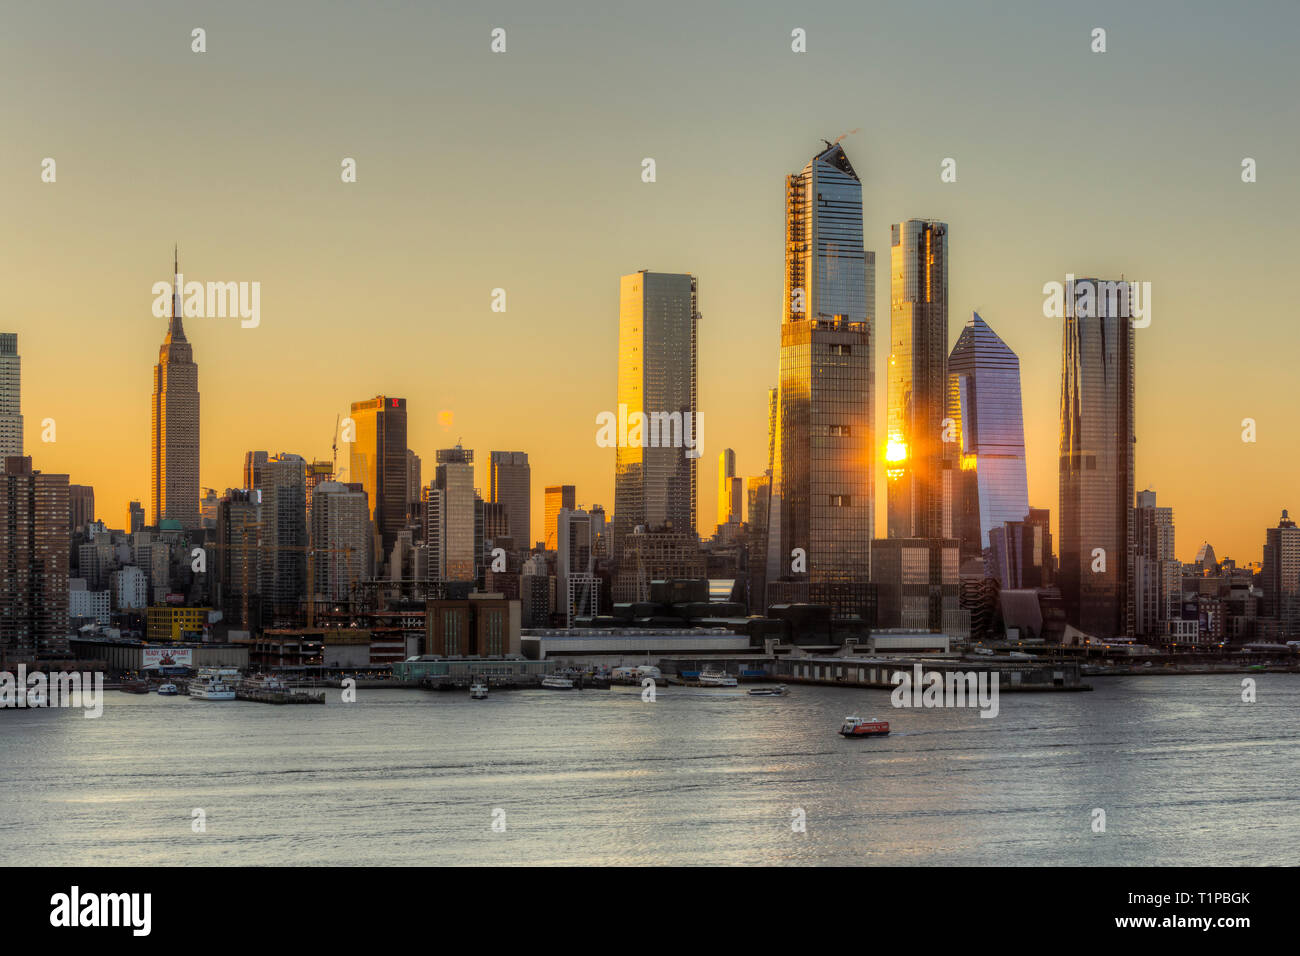 Das Sonnenlicht spiegelte sich bei Sonnenaufgang von der gemischt genutzten Hudson Yards-Entwicklung und anderen Gebäuden auf der Westseite von Manhattan in New York City wider. Stockfoto